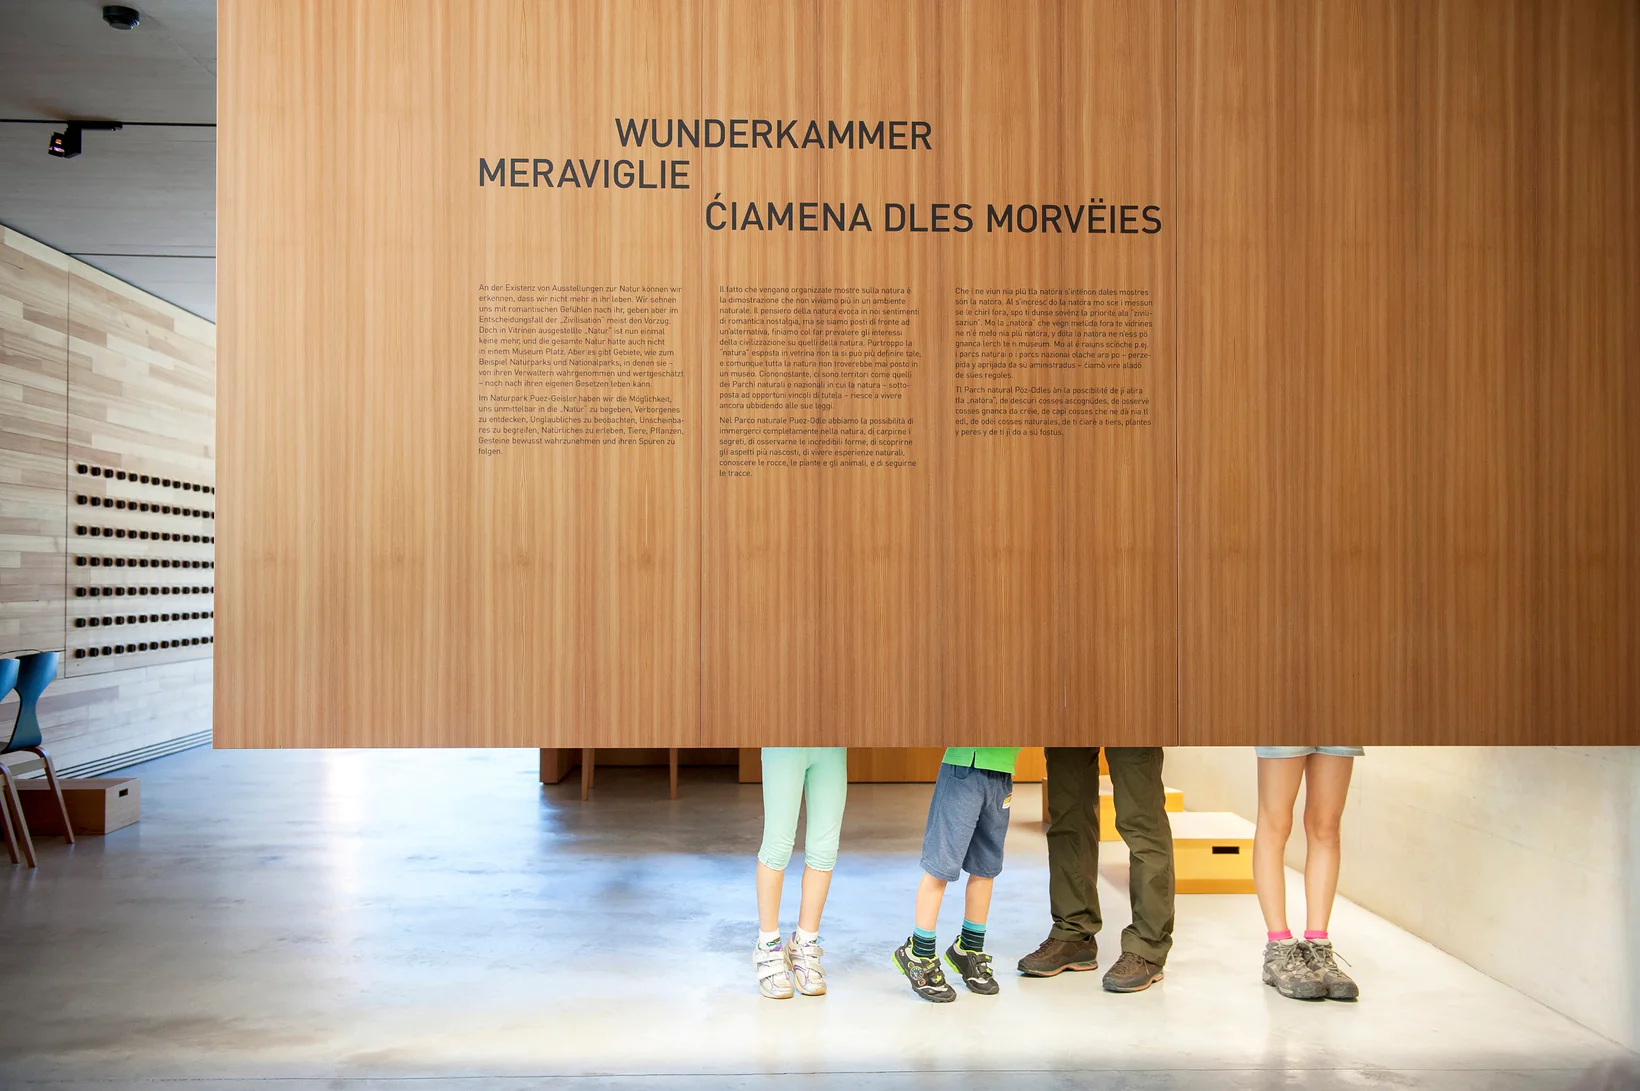 Die Beine von vier Besuchern des Naturparkhauses Villnöss sind hinter einer Ausstellungswand mit allen drei Südtiroler Sprachen Italienisch, Deutsch und Ladinisch.